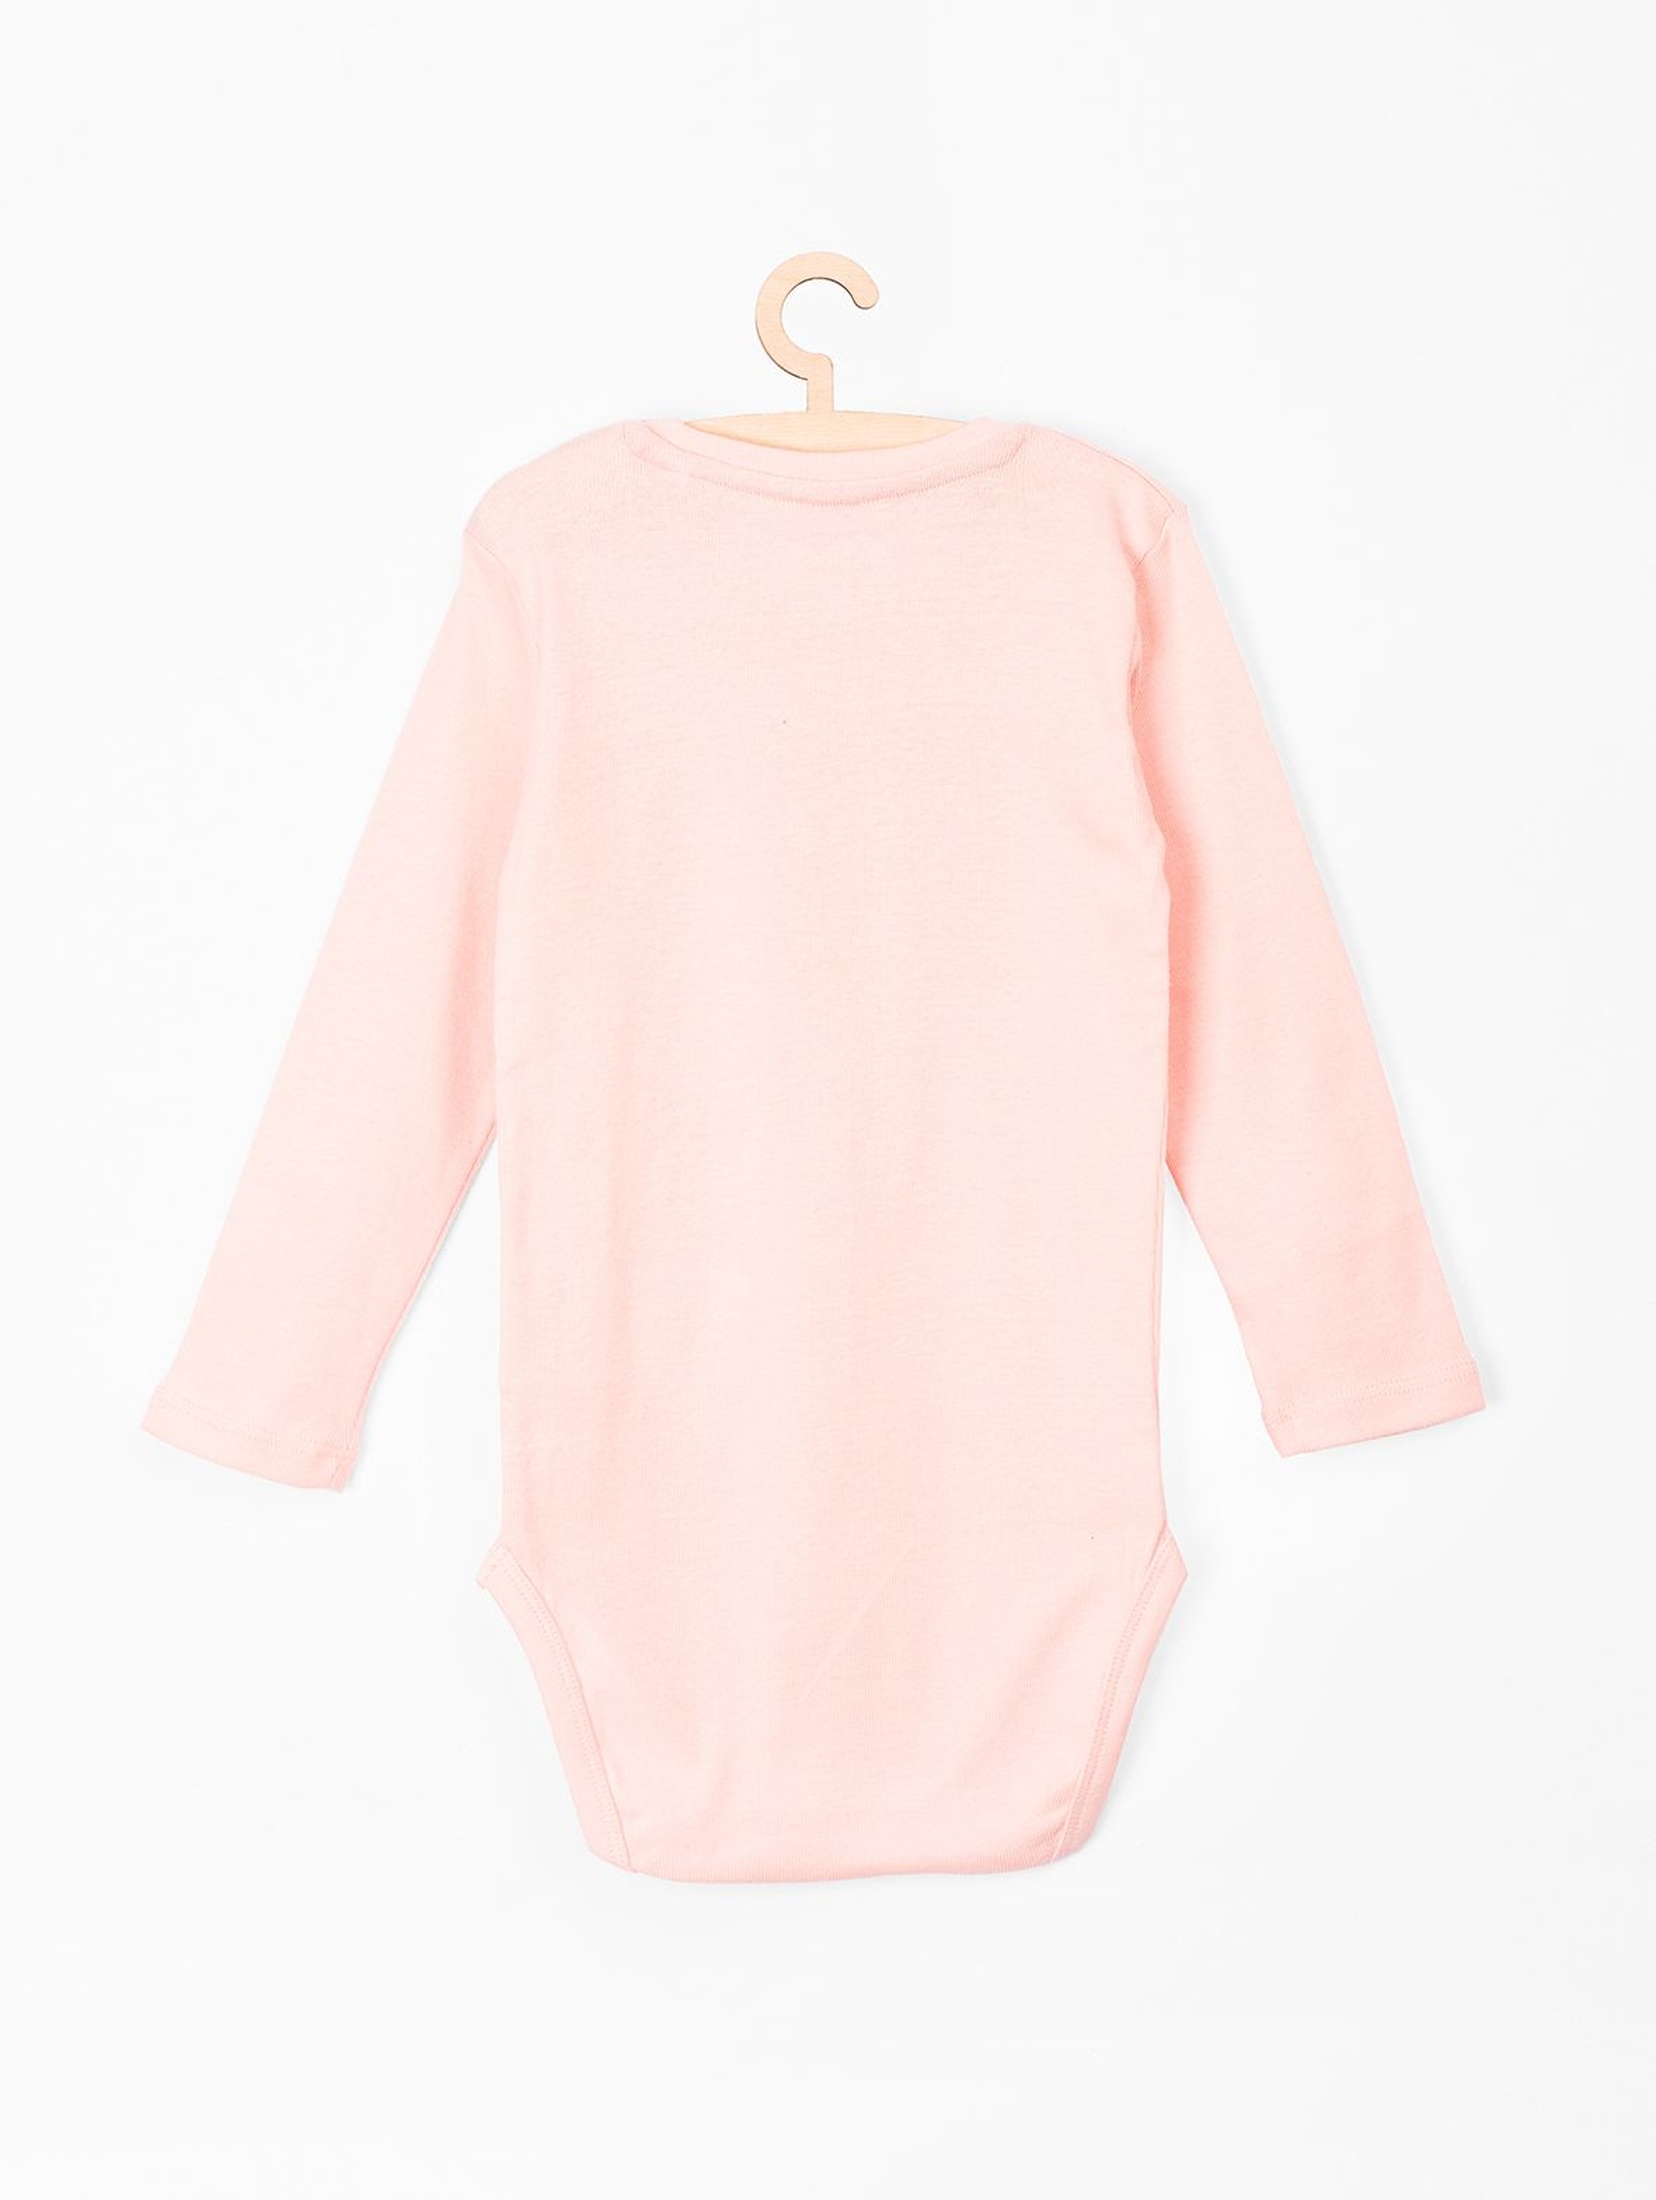 Body bawełniane dla niemowlaka różowe z napisem Cukiereczek